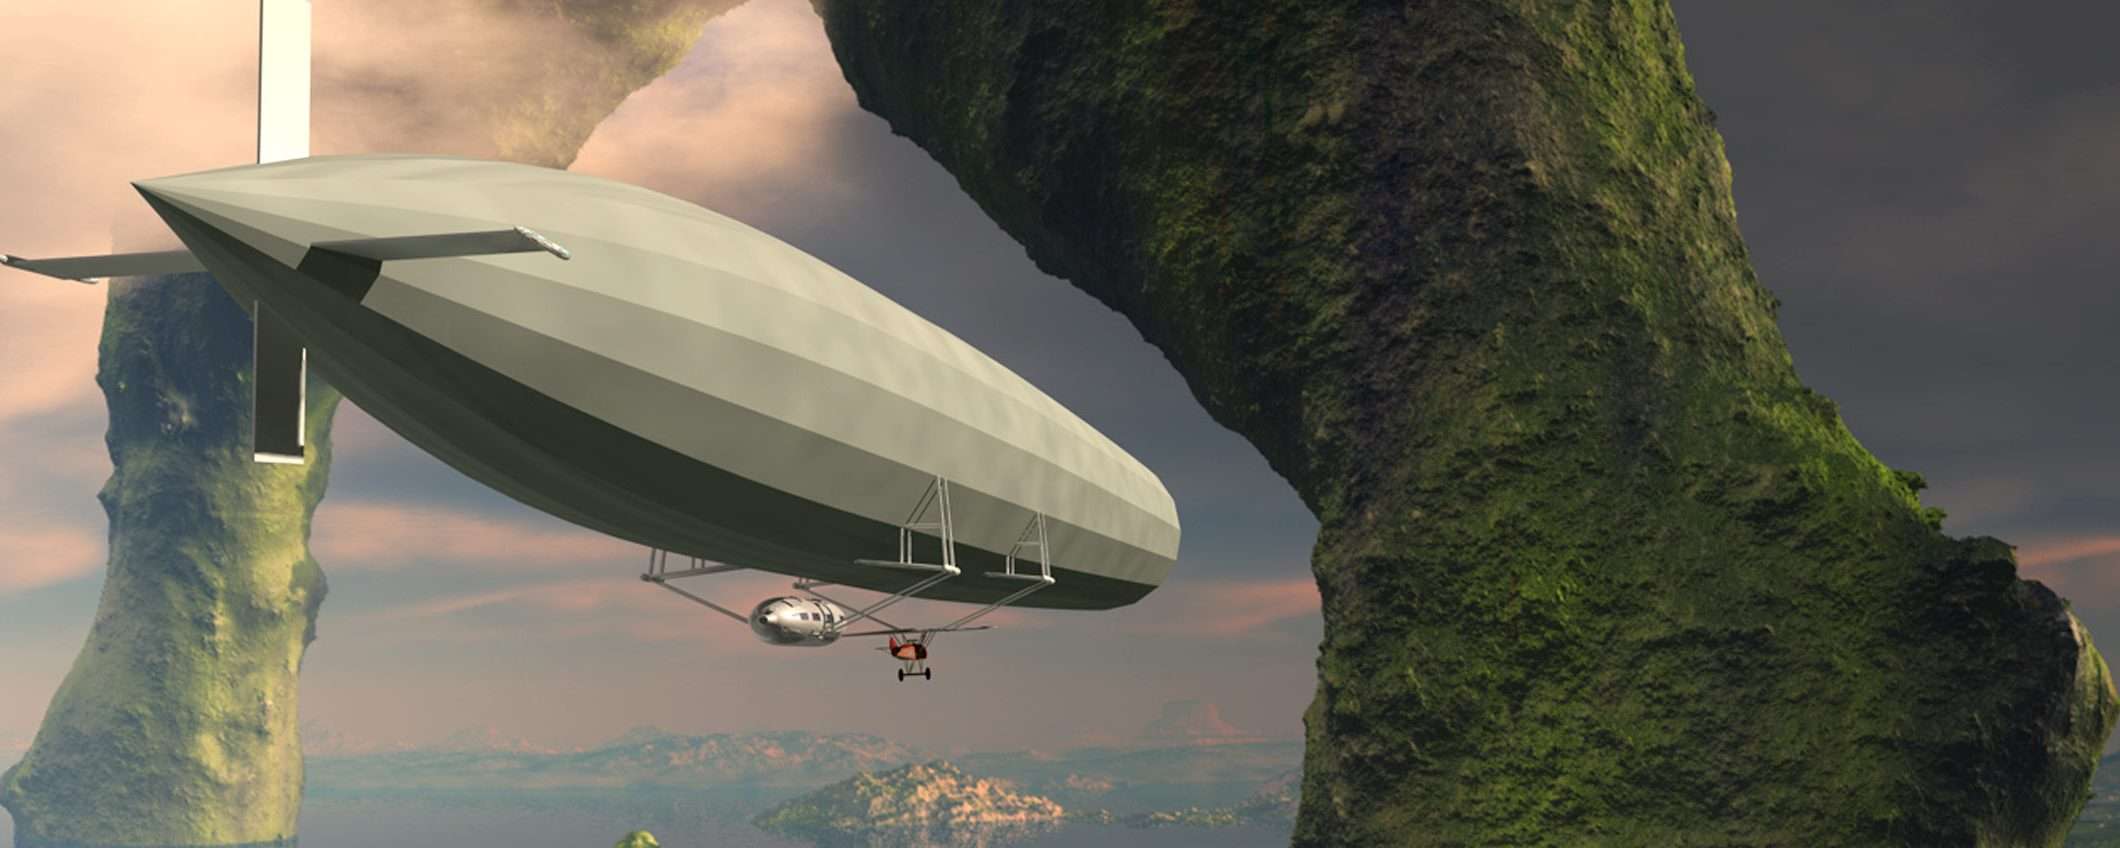 Uno Zeppelin in volo nel cielo dei ransomware